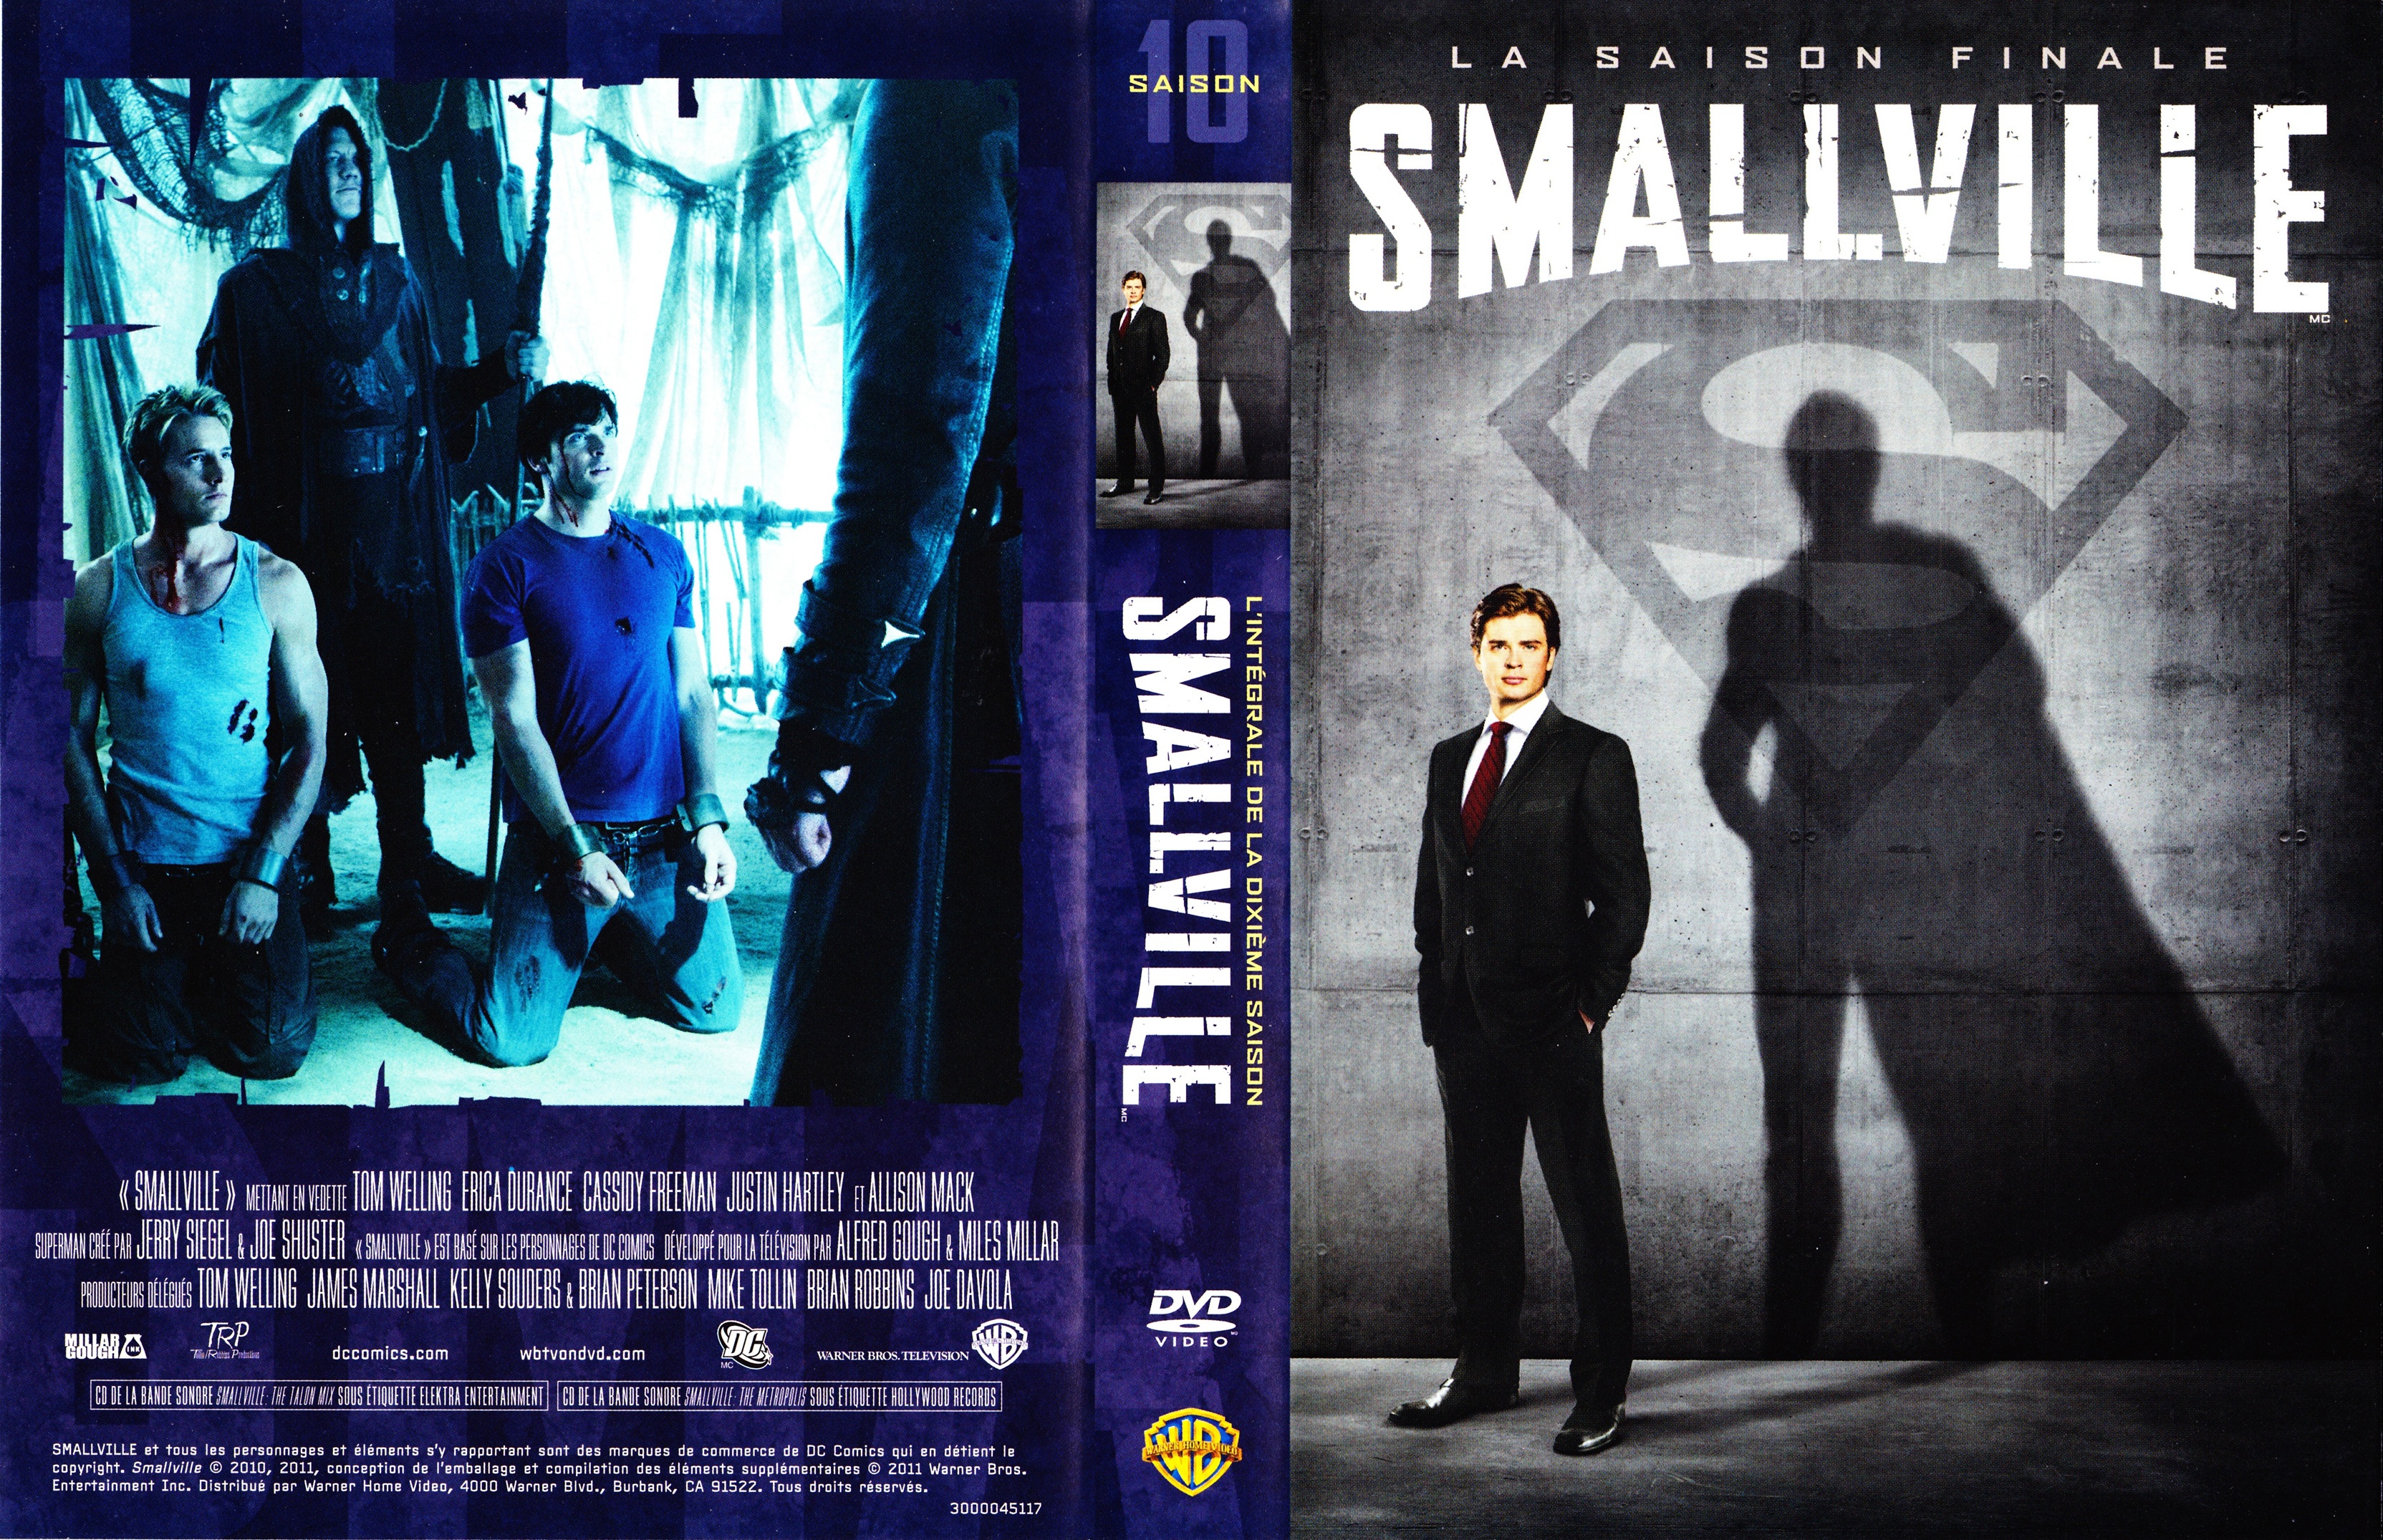 Jaquette DVD Smallville saison 10 COFFRET v3